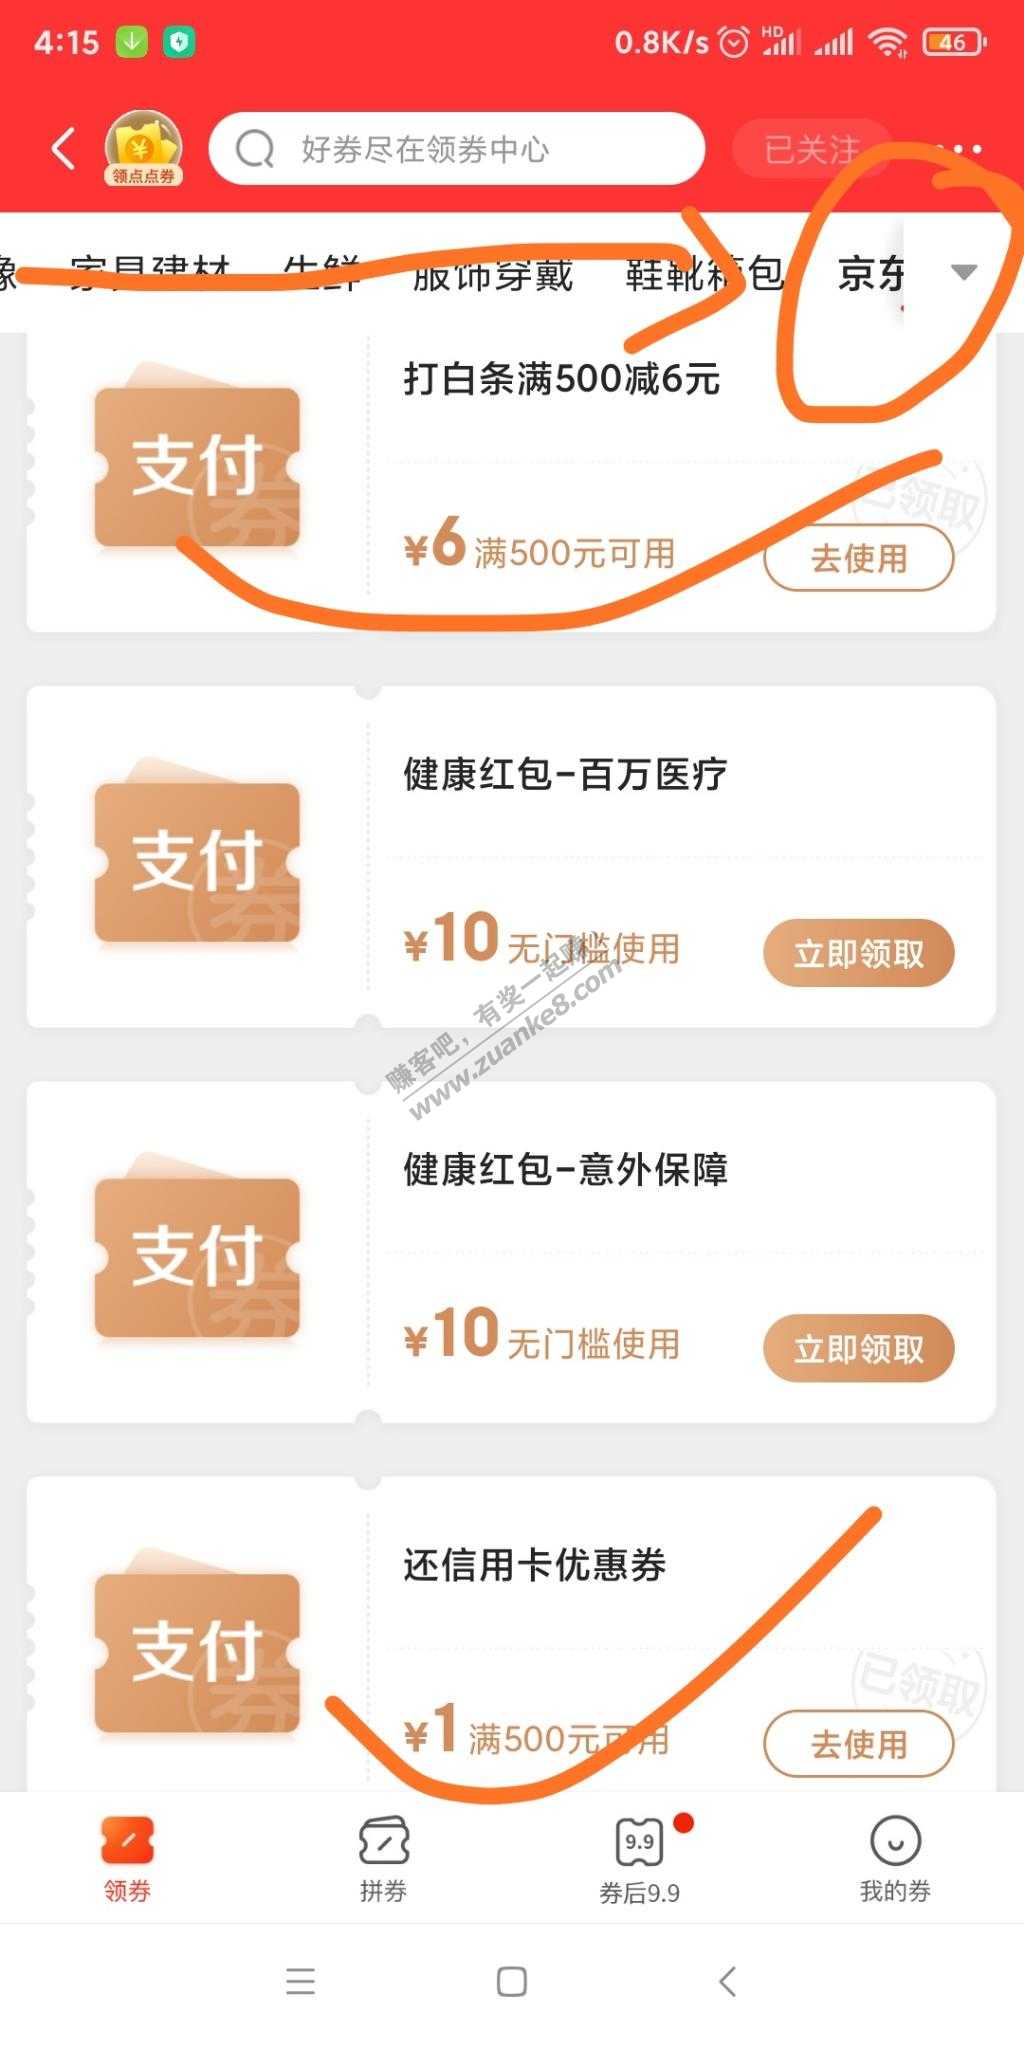 可能非首发：京东app领信用卡500-1-白条49-2-109-5-500-6-惠小助(52huixz.com)